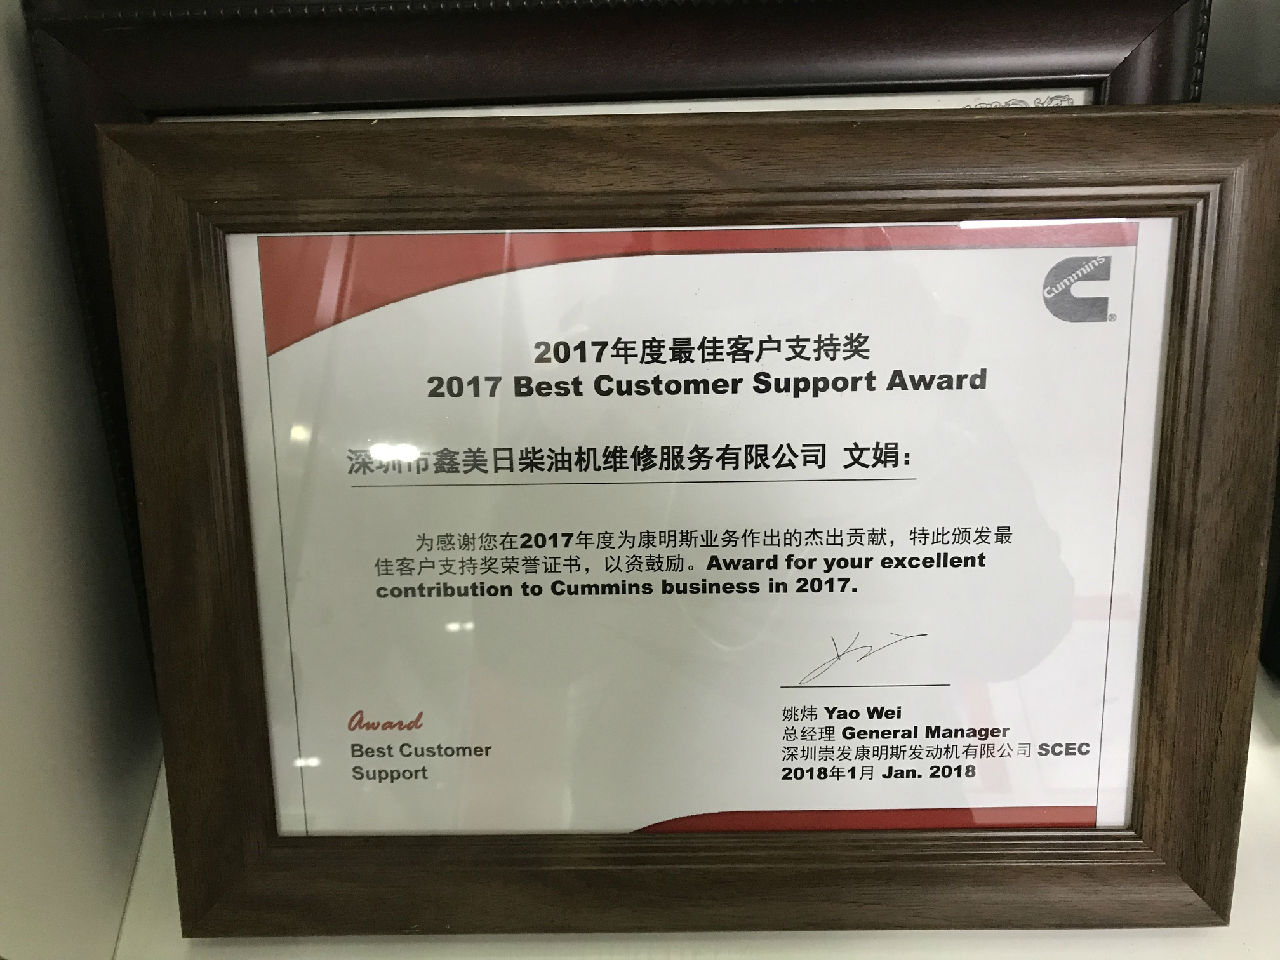 2017年度最佳客户支持奖 文娟_c